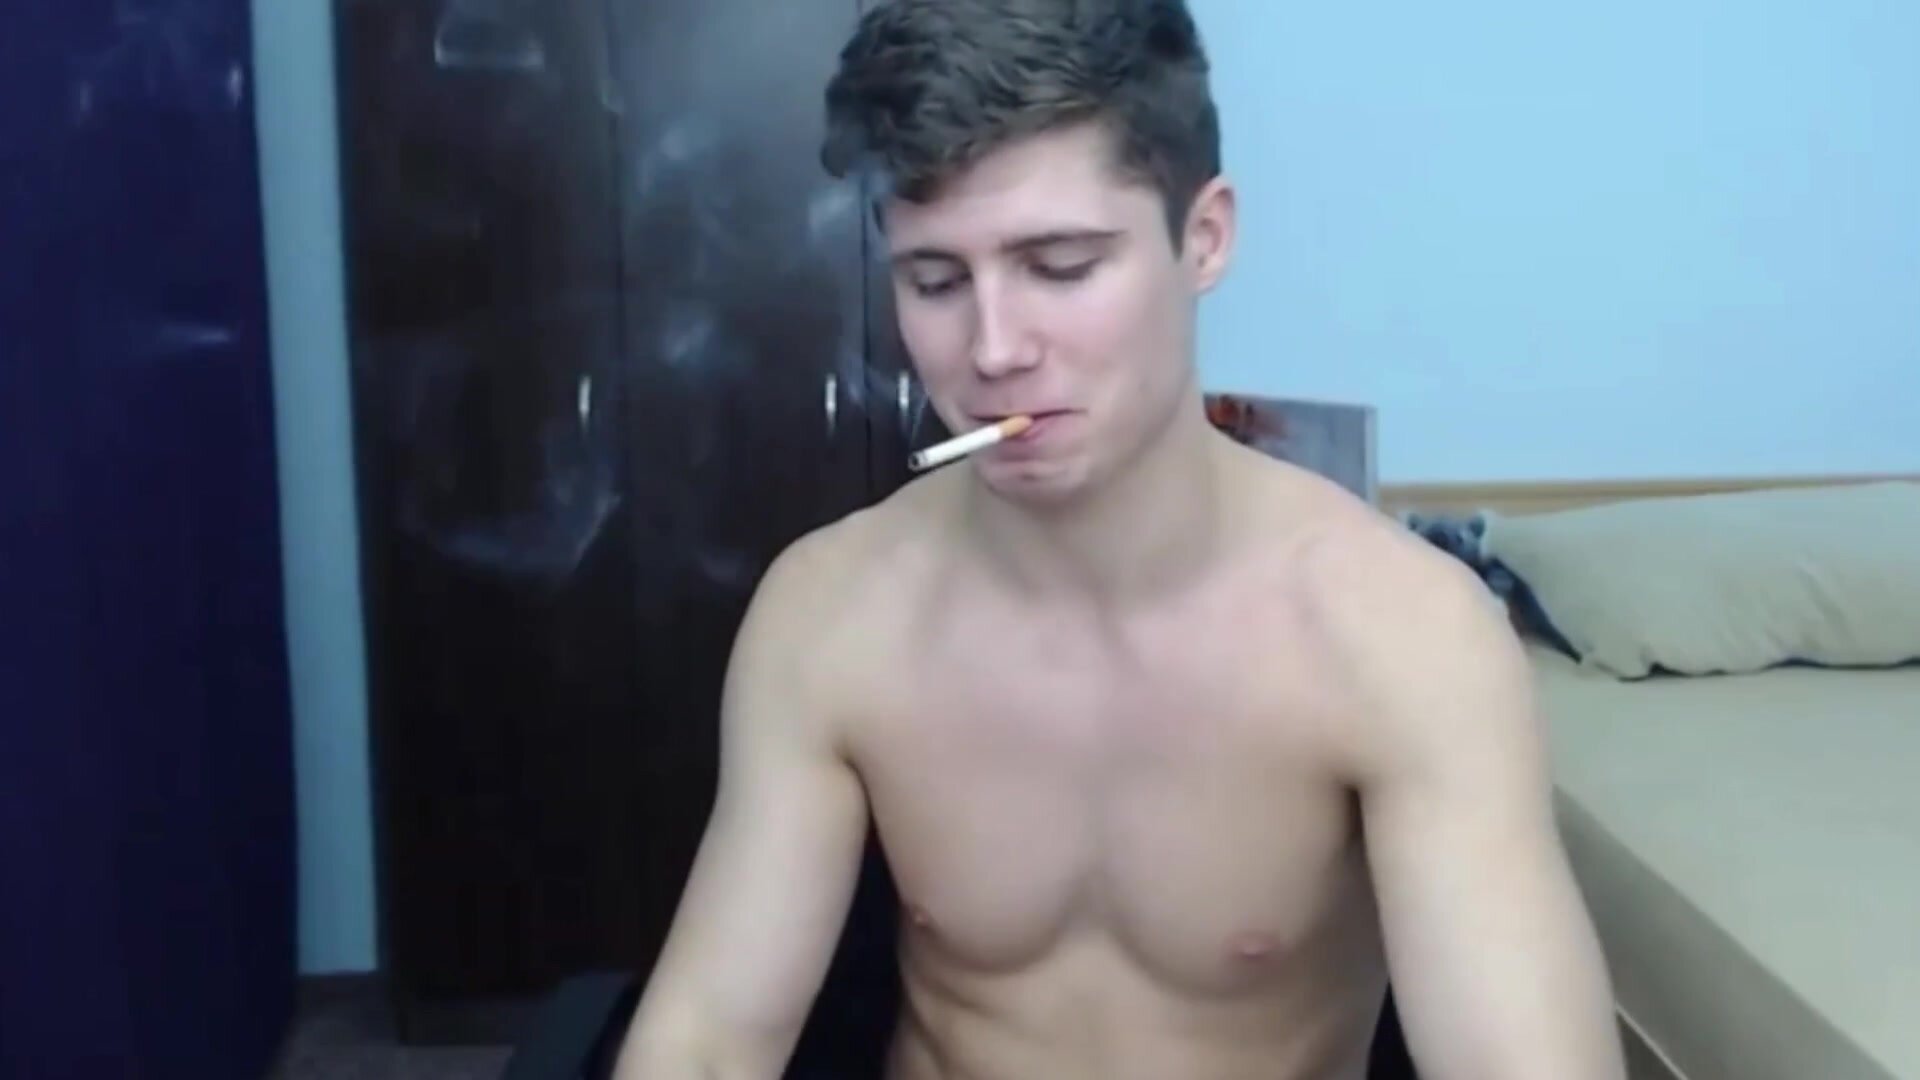 Hot boy smoking - video 4